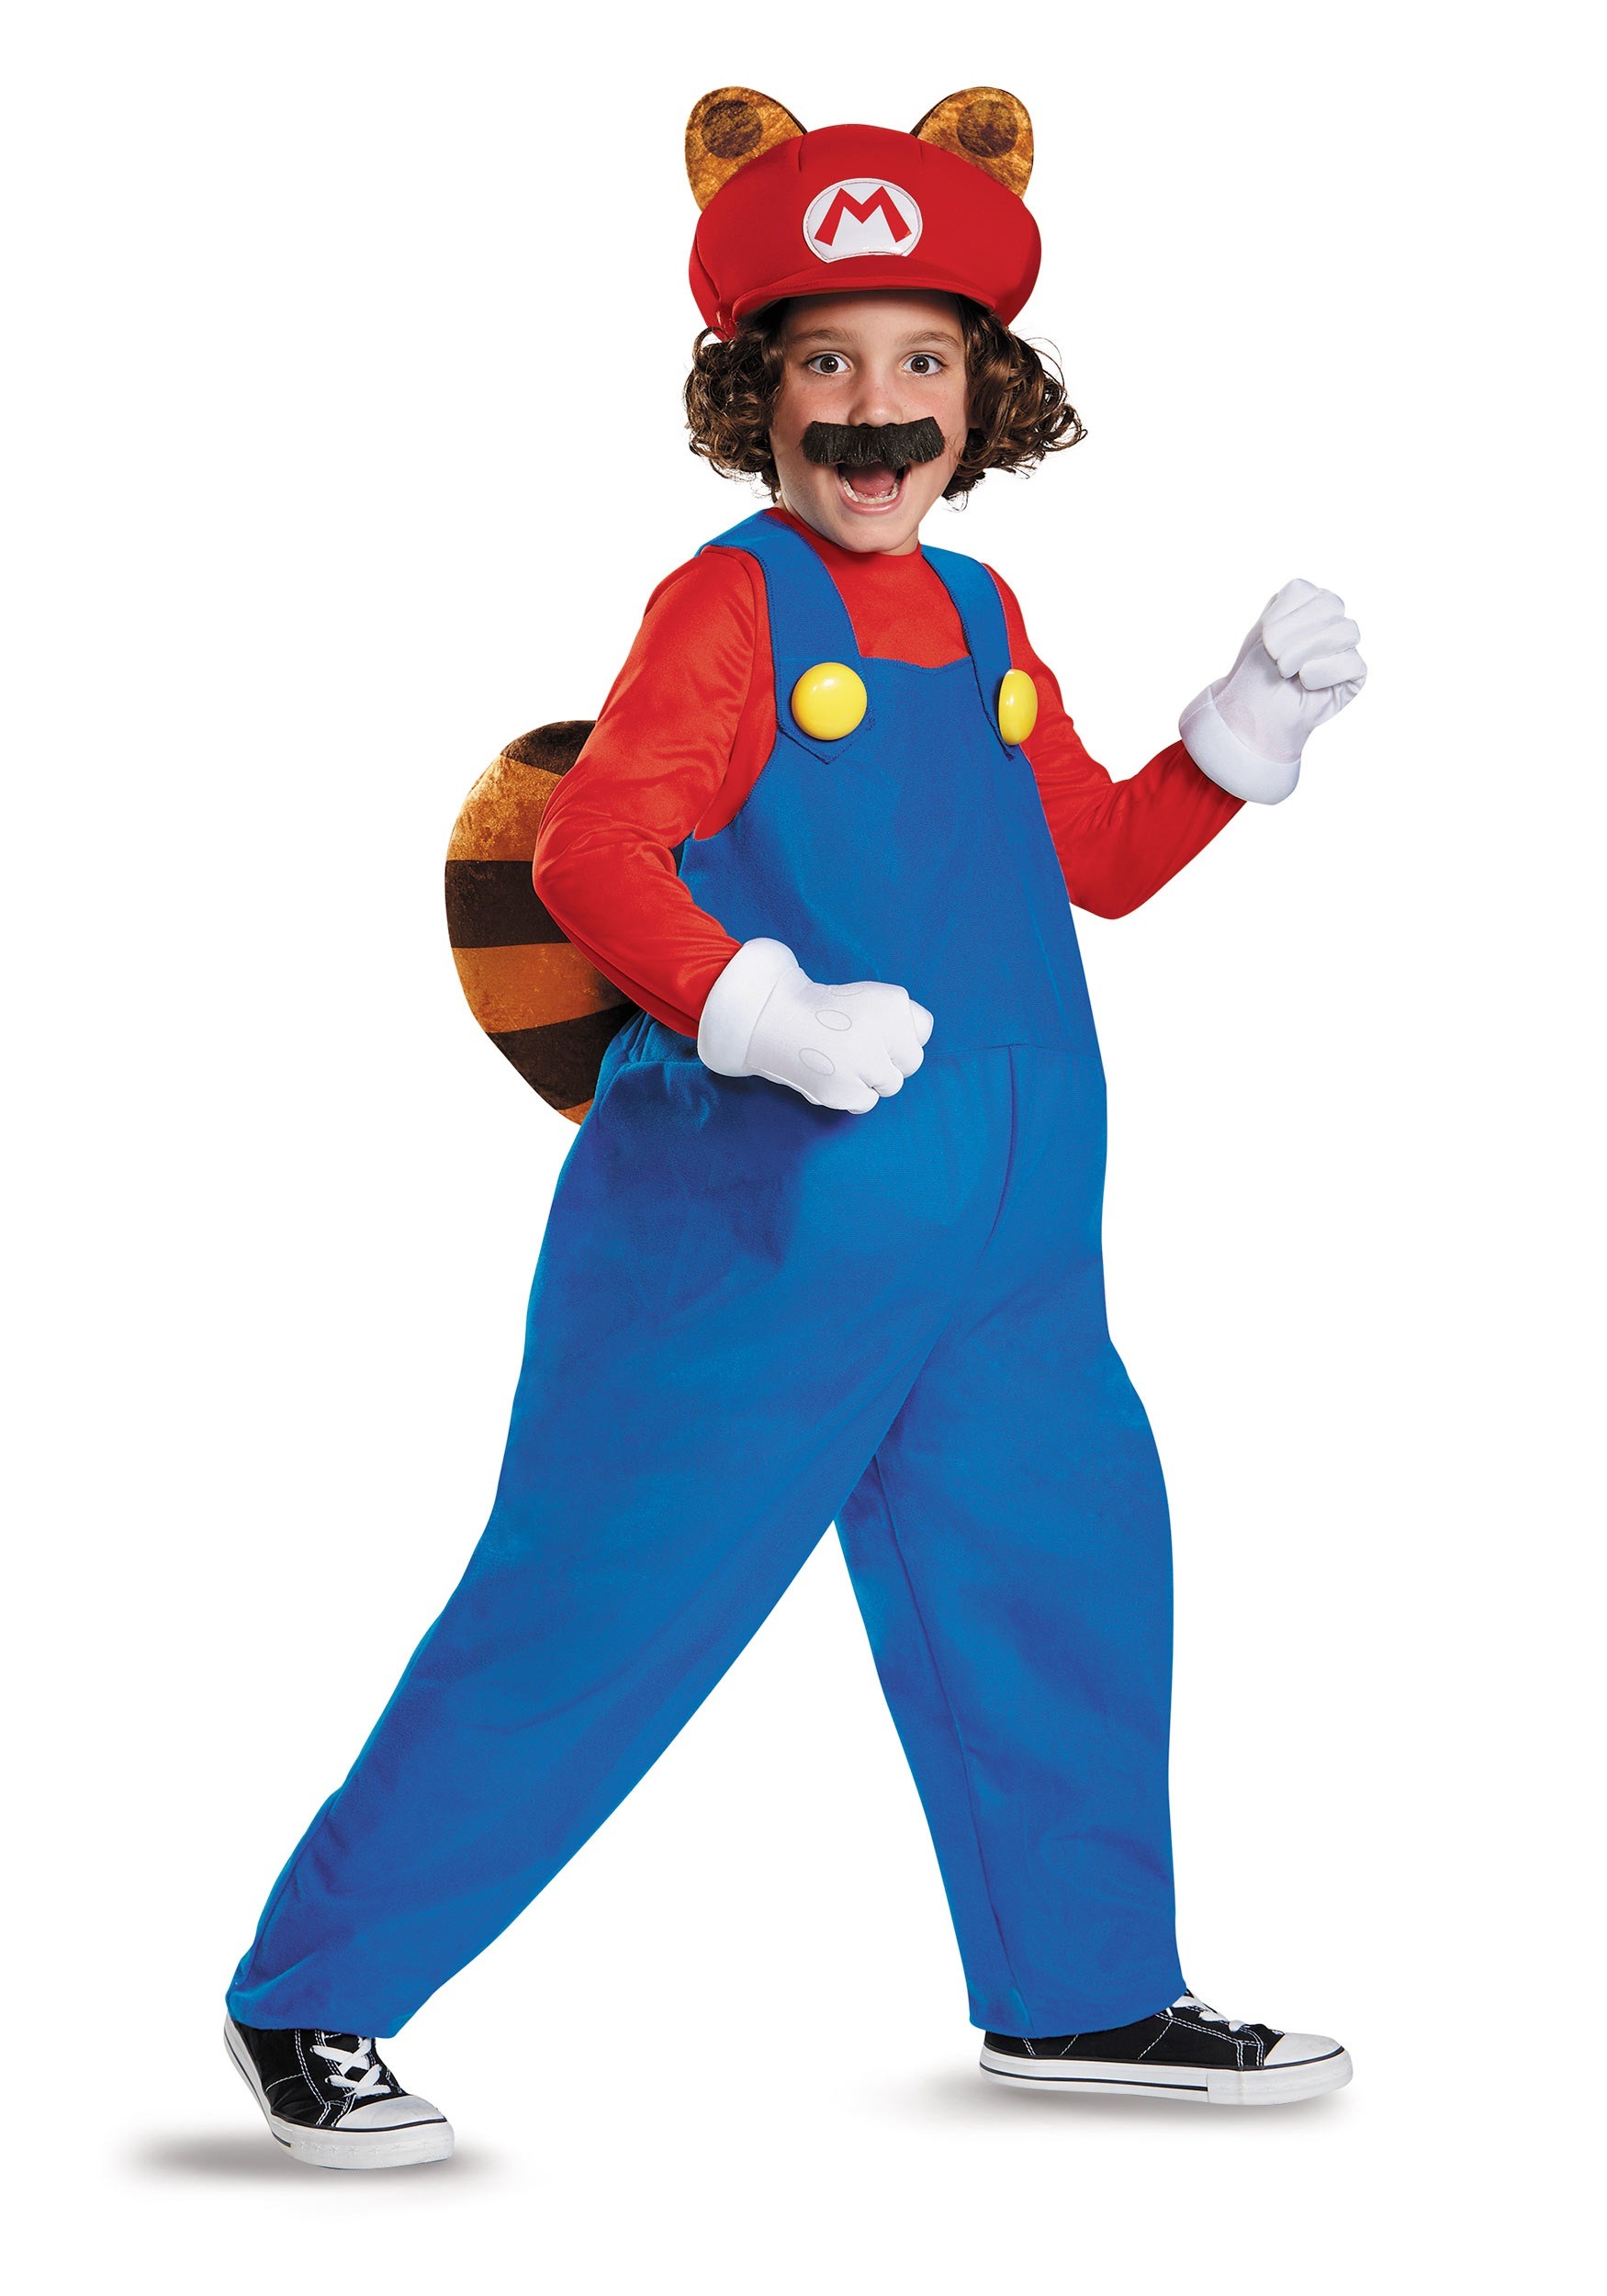 Deluxe Mario Raccoon Costume for Kids